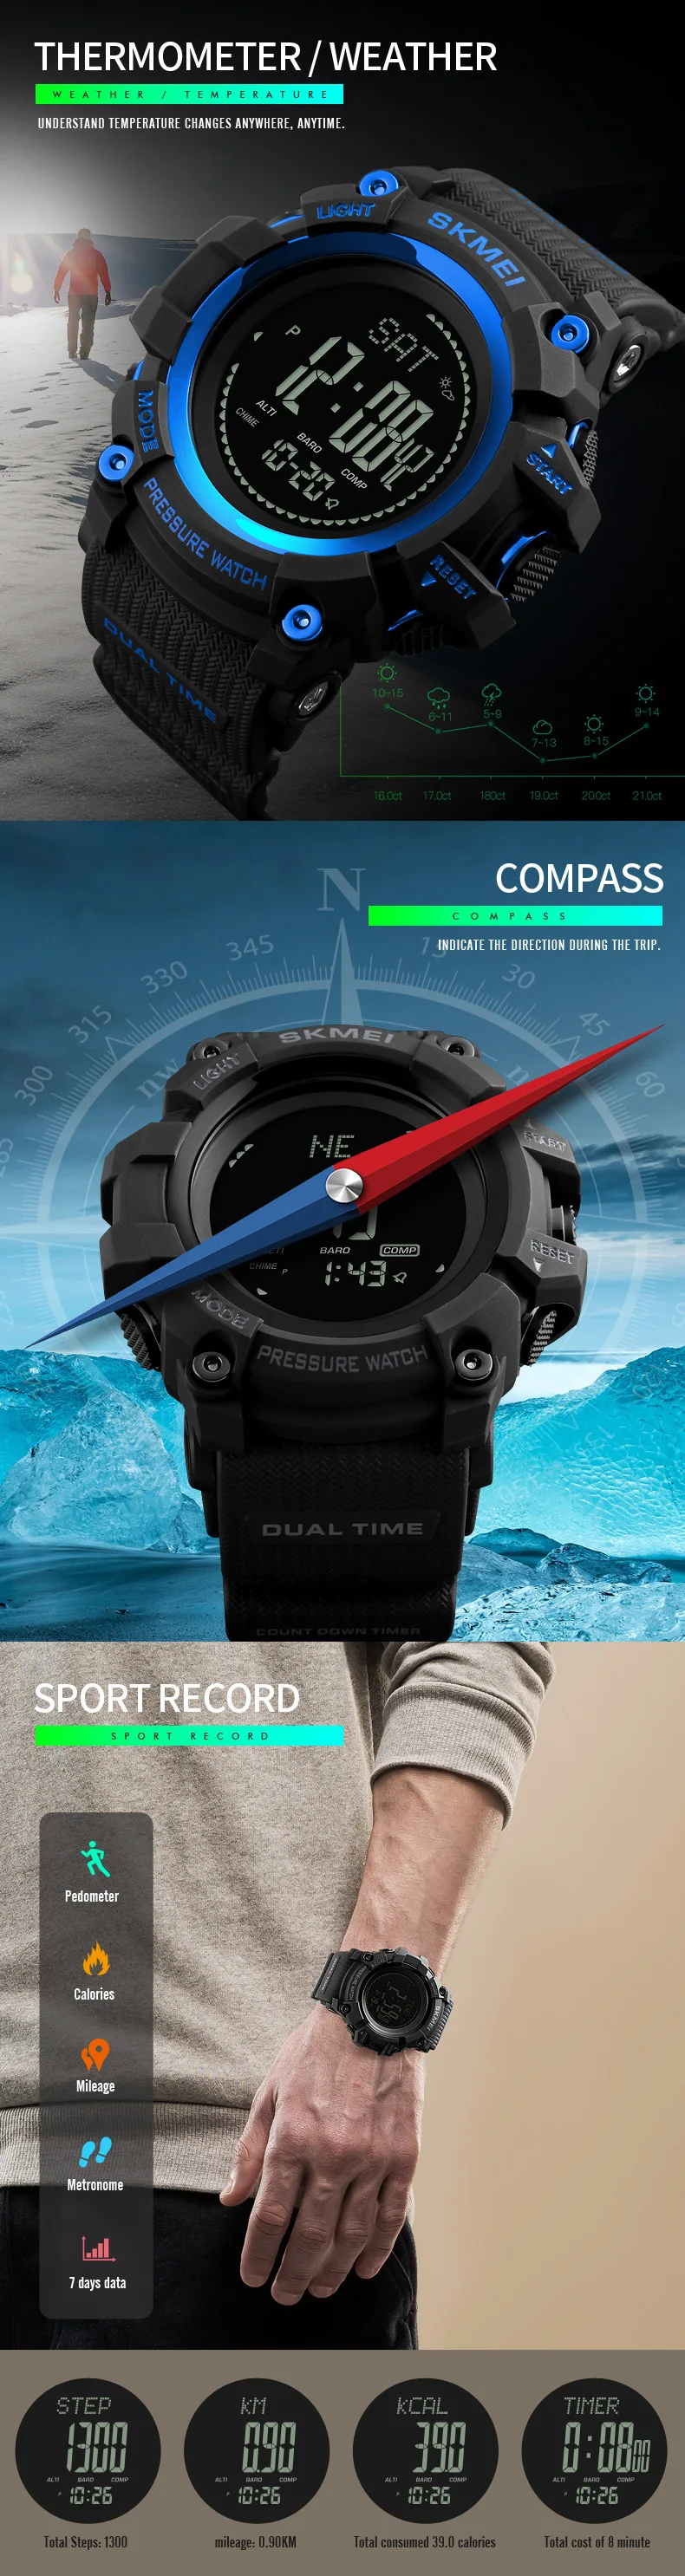 SKMEI мужские цифровые наручные часы, поддержка погоды, компас, мужские часы, многофункциональные, для спорта на открытом воздухе, мужские часы, наручные часы